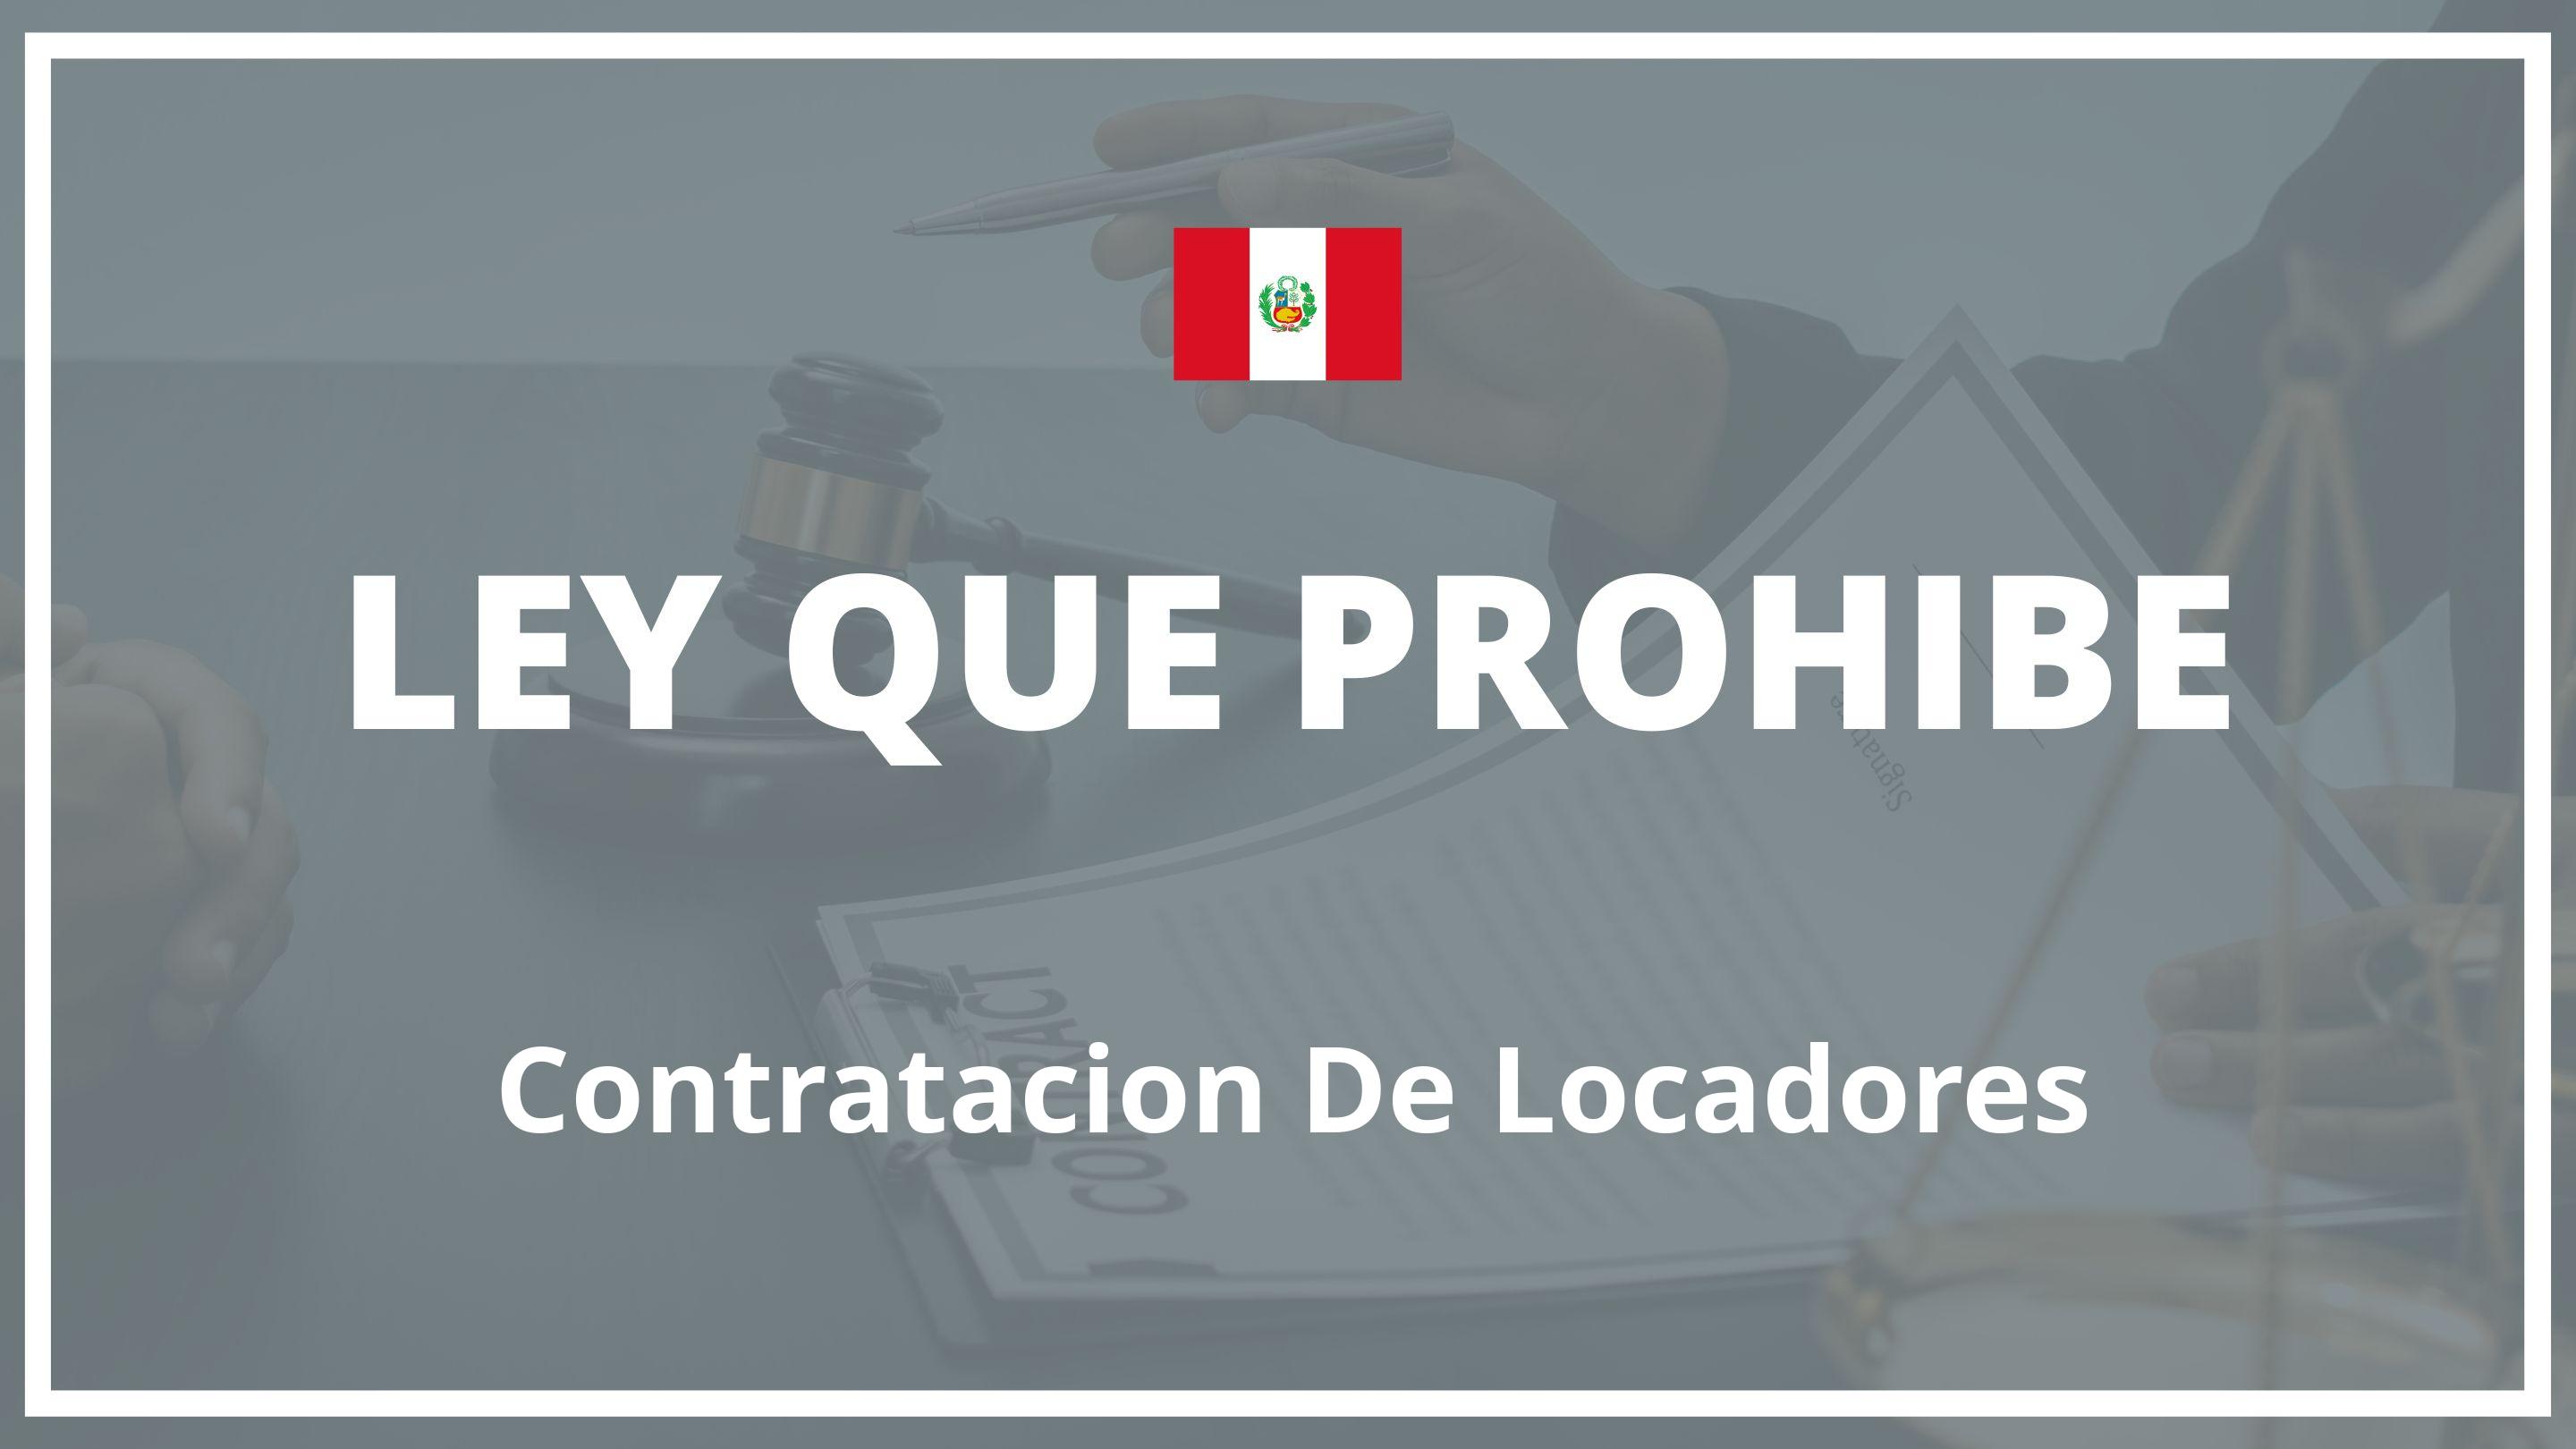 Ley que prohibe contratacion de locadores Peru